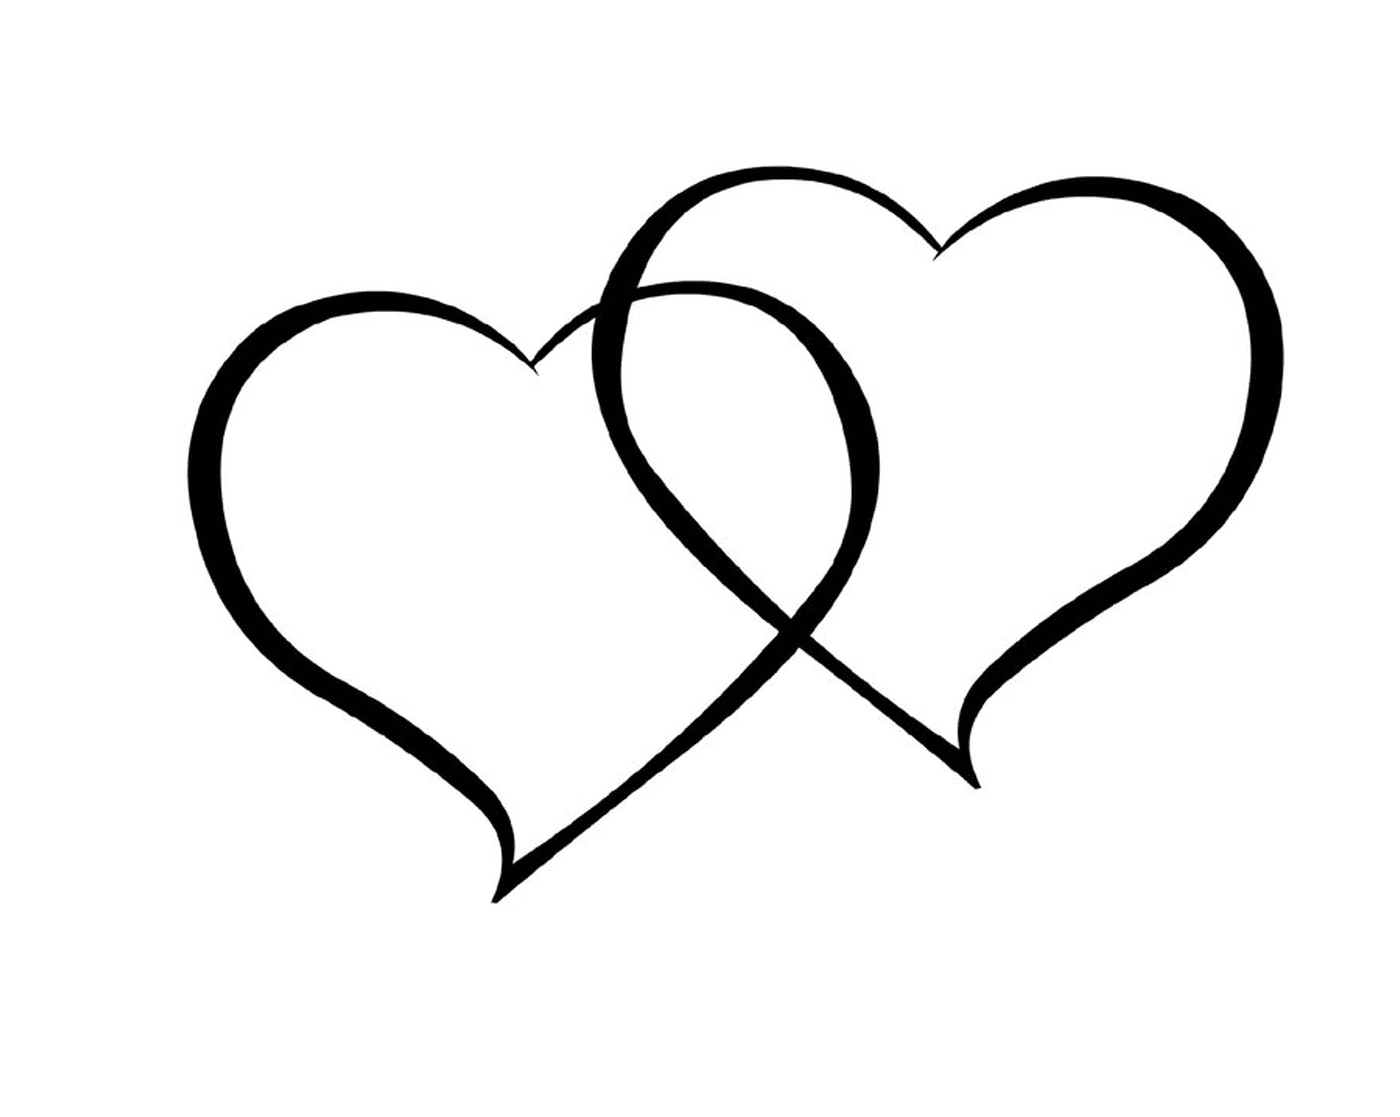  Dos corazones dibujados en tinta negra sobre un fondo blanco 